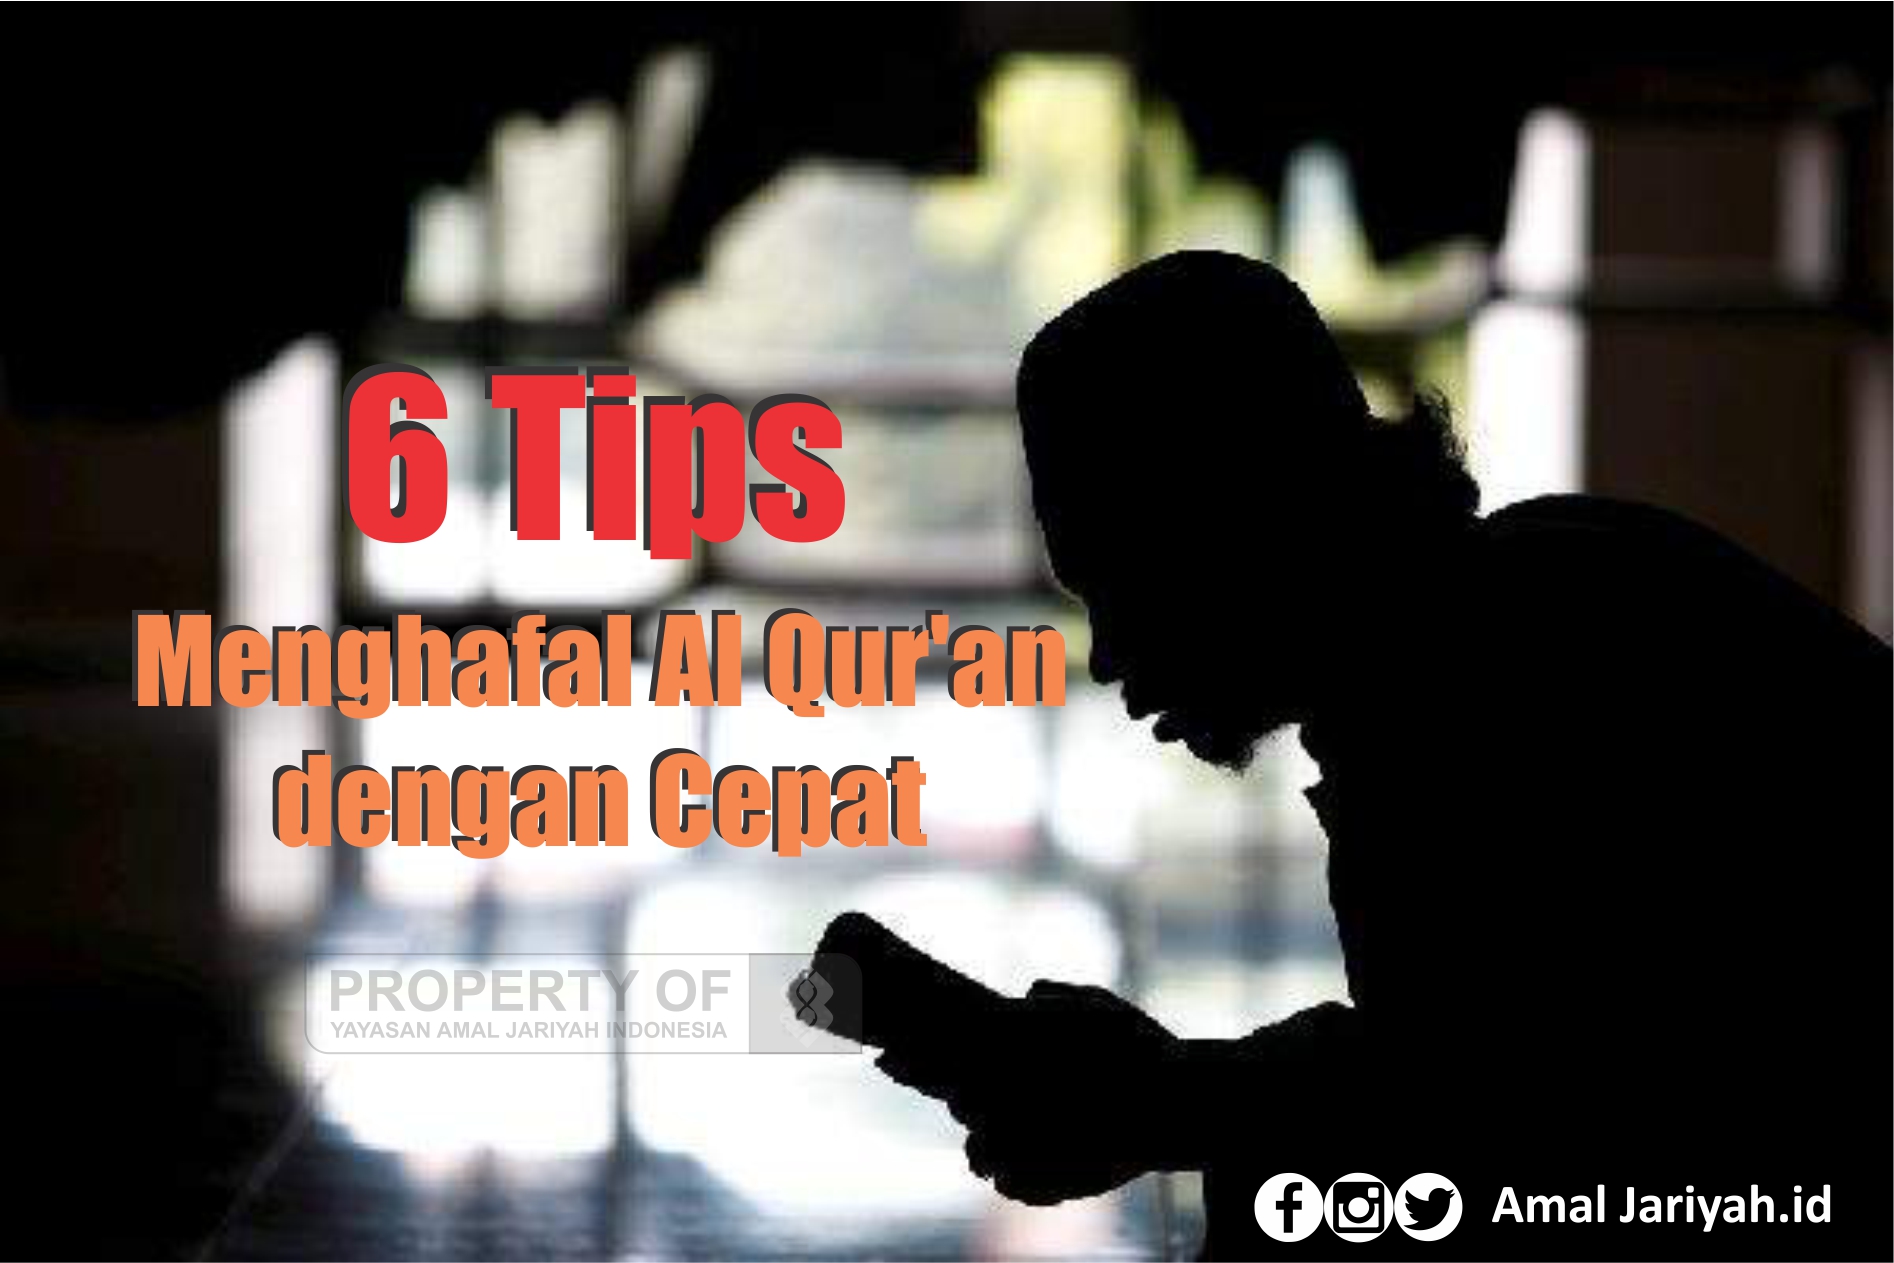 6 Tips Menghafal Al Qur'an dengan Cepat